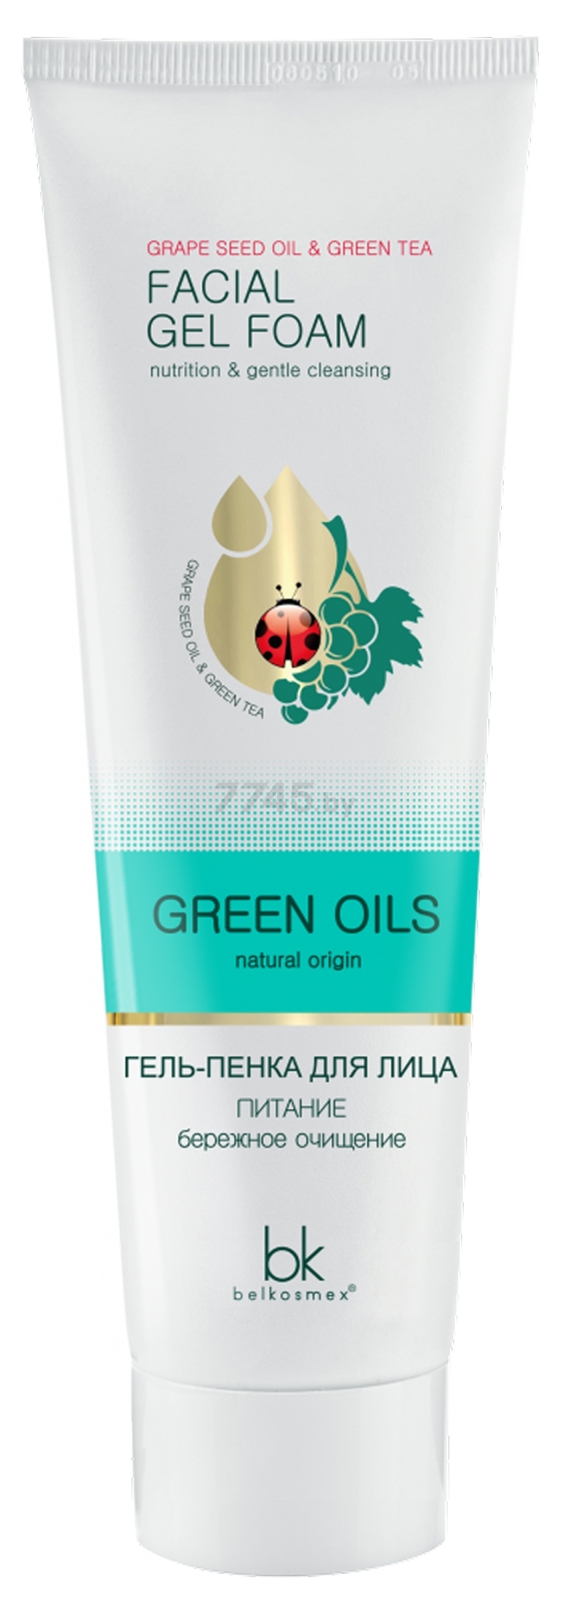 Гель-пенка для умывания BELKOSMEX Green Oils Питание бережное очищение 100 мл (4810090010799)